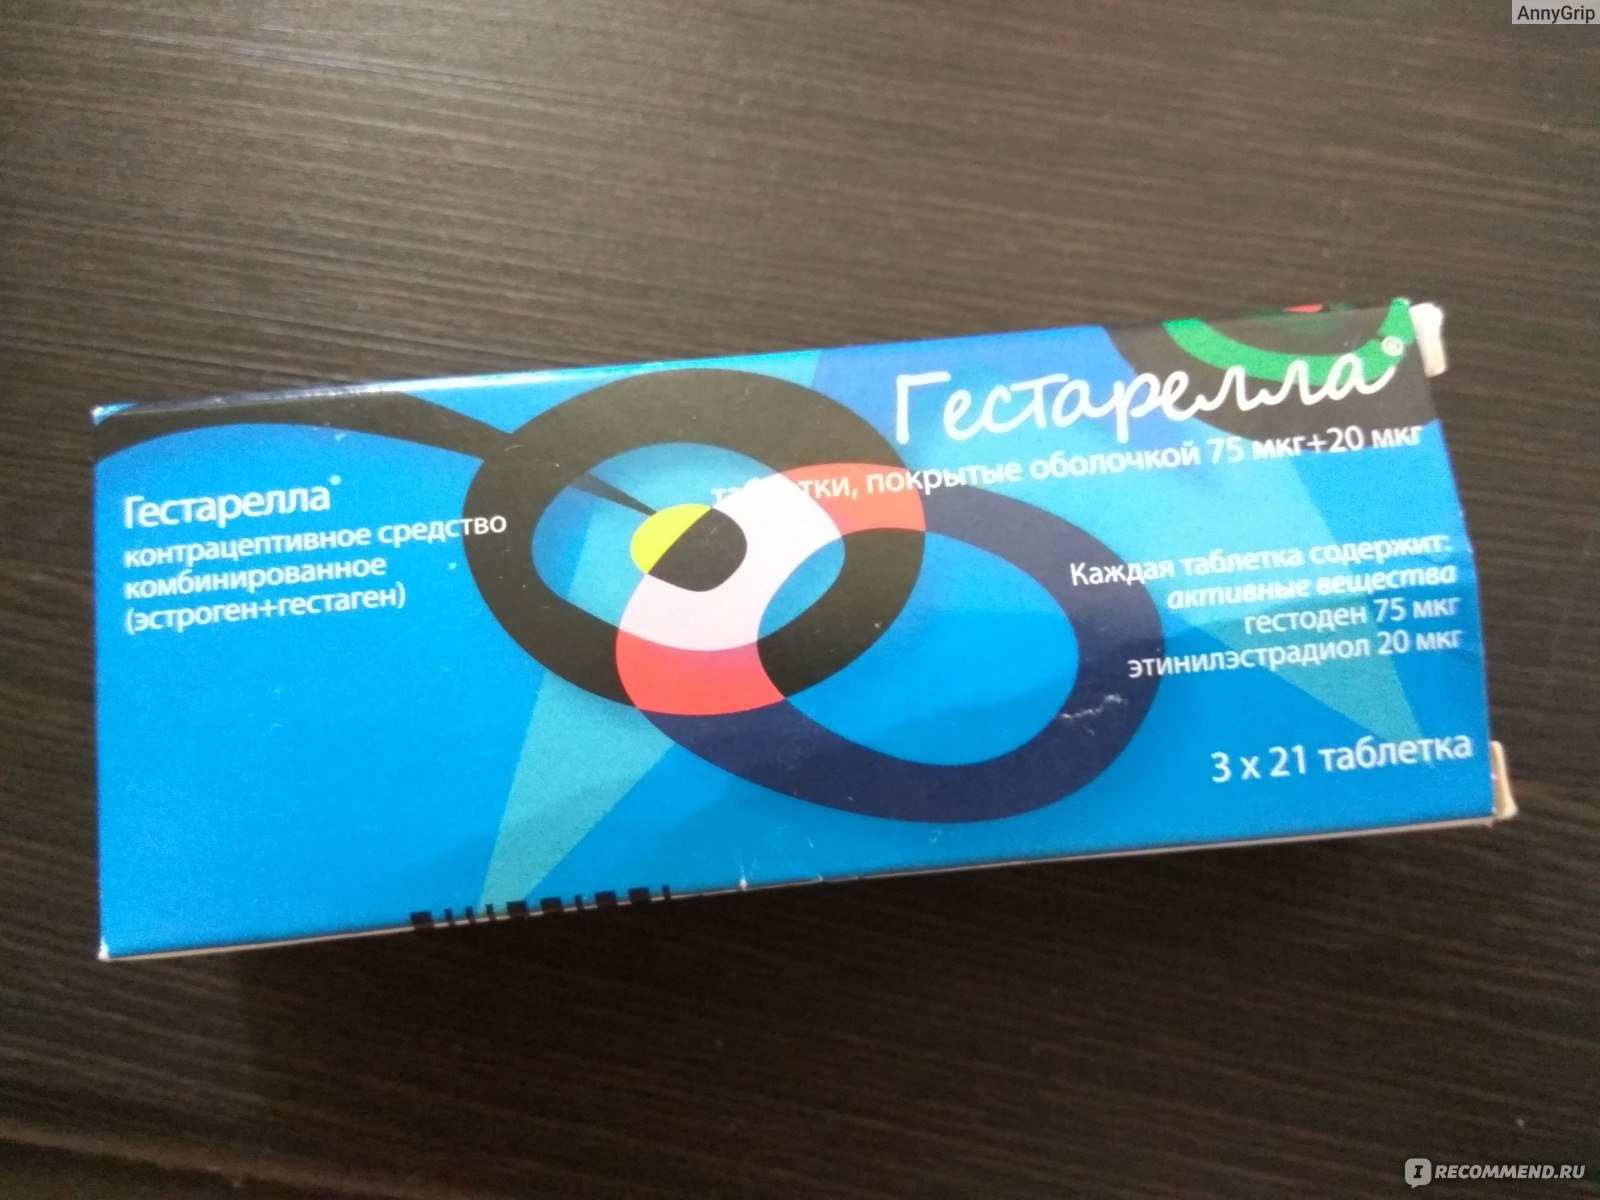 Контрацептивы Zentiva Гестарелла - «Надежная контрацепция: мой опыт .